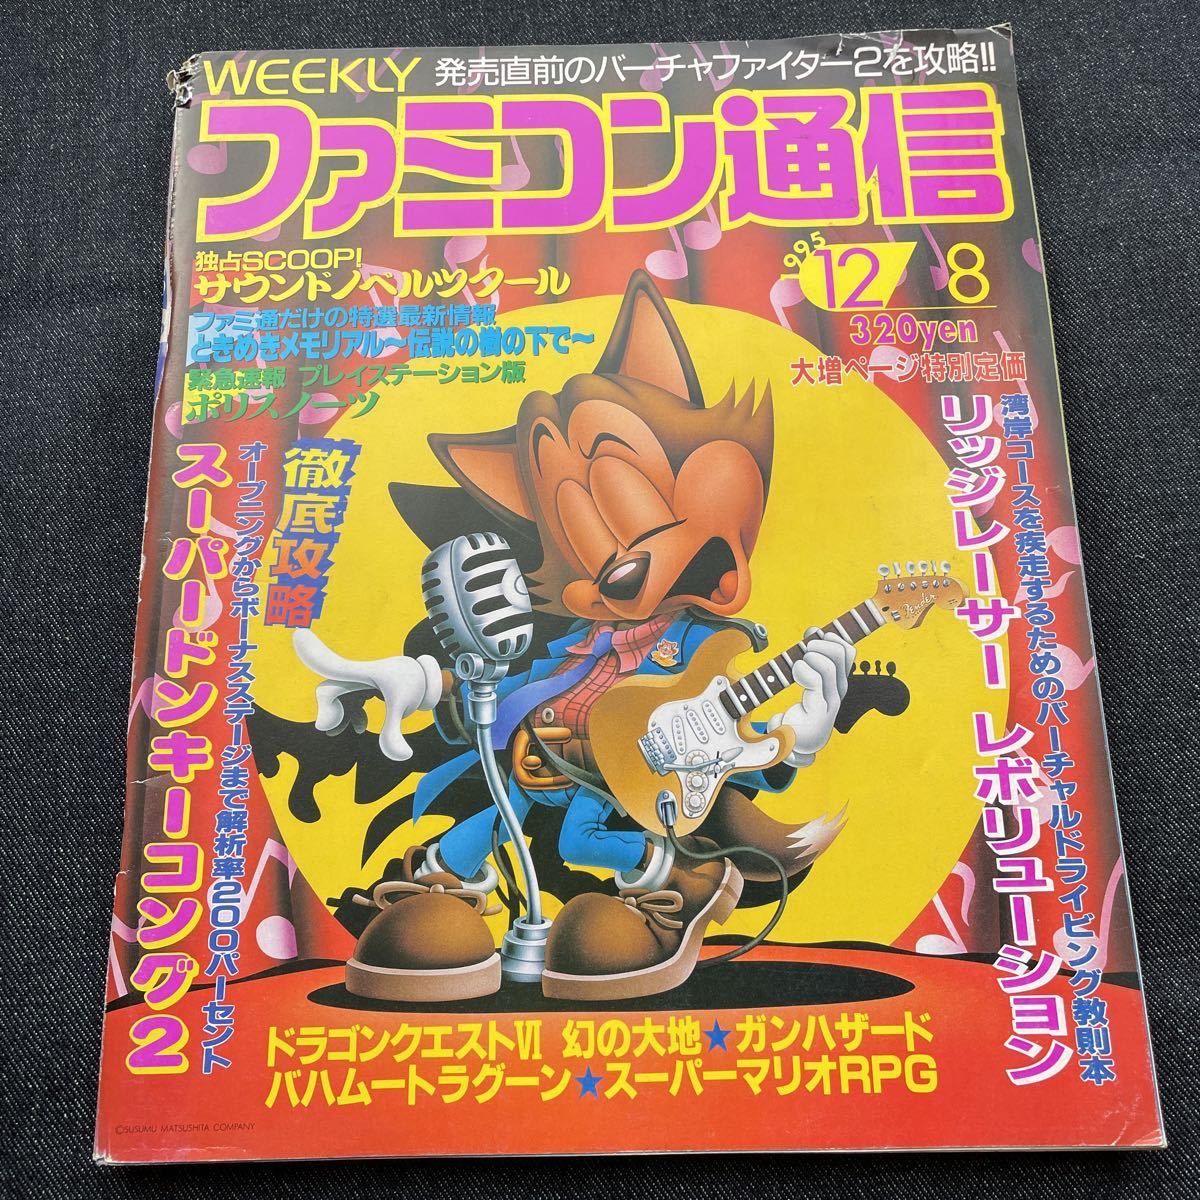 週刊ファミコン通信1995年12月8日号 No.364スーパーマリオRPG Nintendo ファミ通 平成レトロゲーム ドンキーコング プレステ  山下達郎